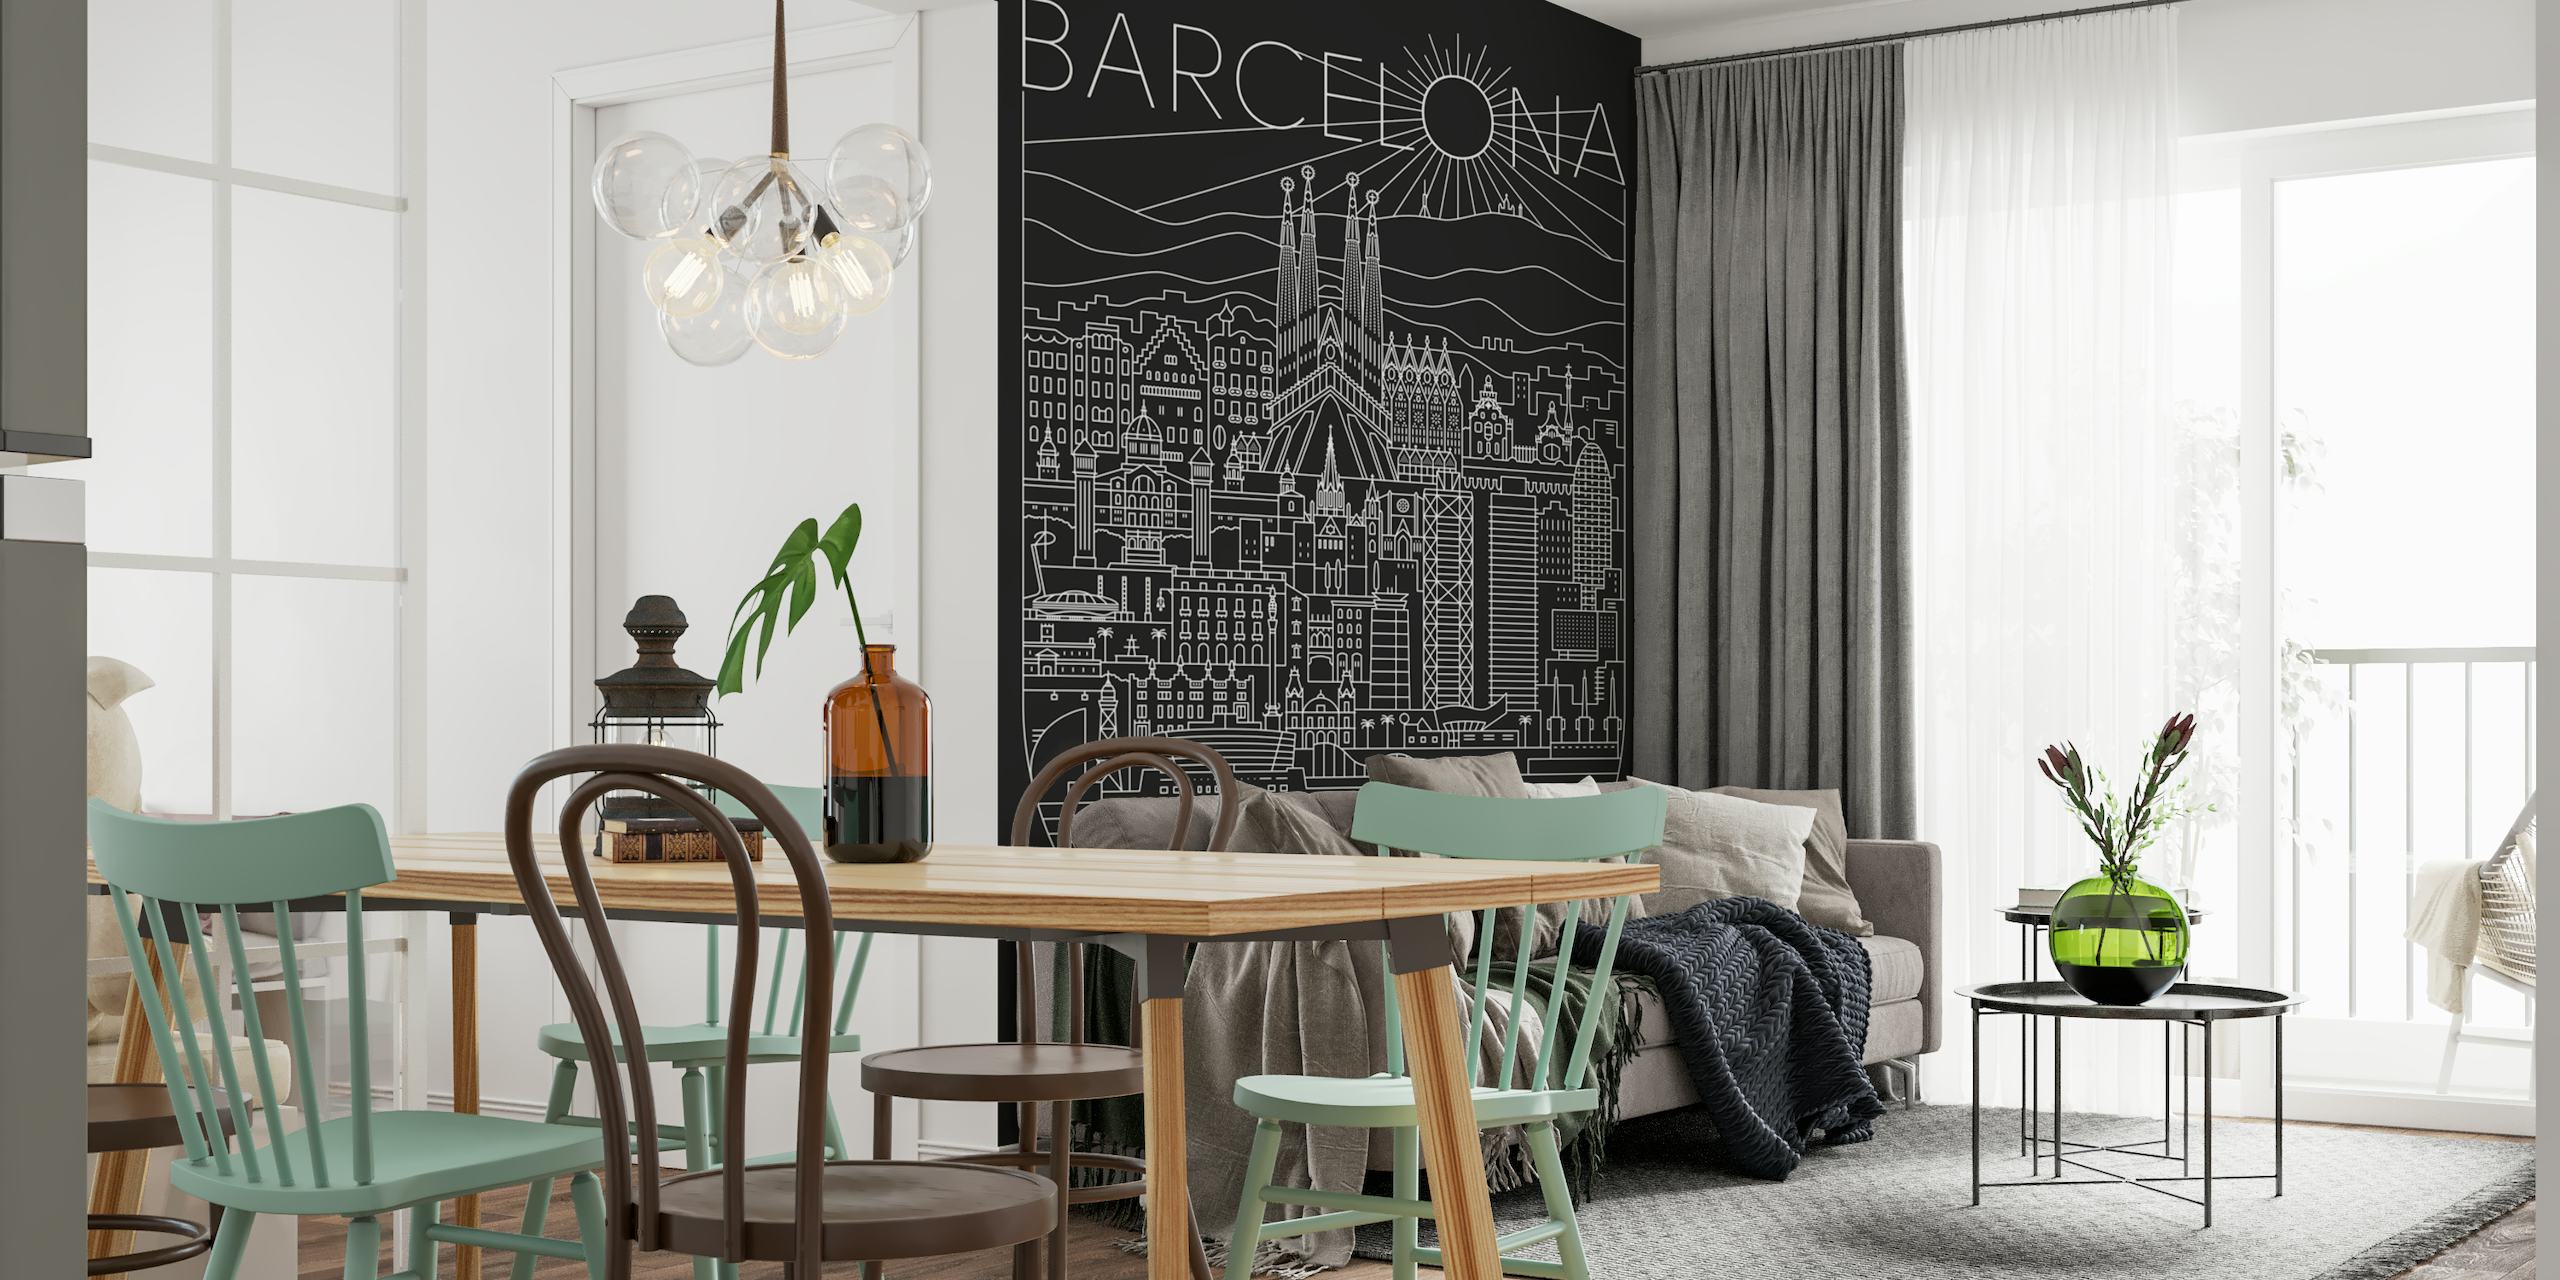 Lijnkunstmuurschildering met een afbeelding van het stadsbeeld van Barcelona met hoogtepunten zoals de Sagrada Familia